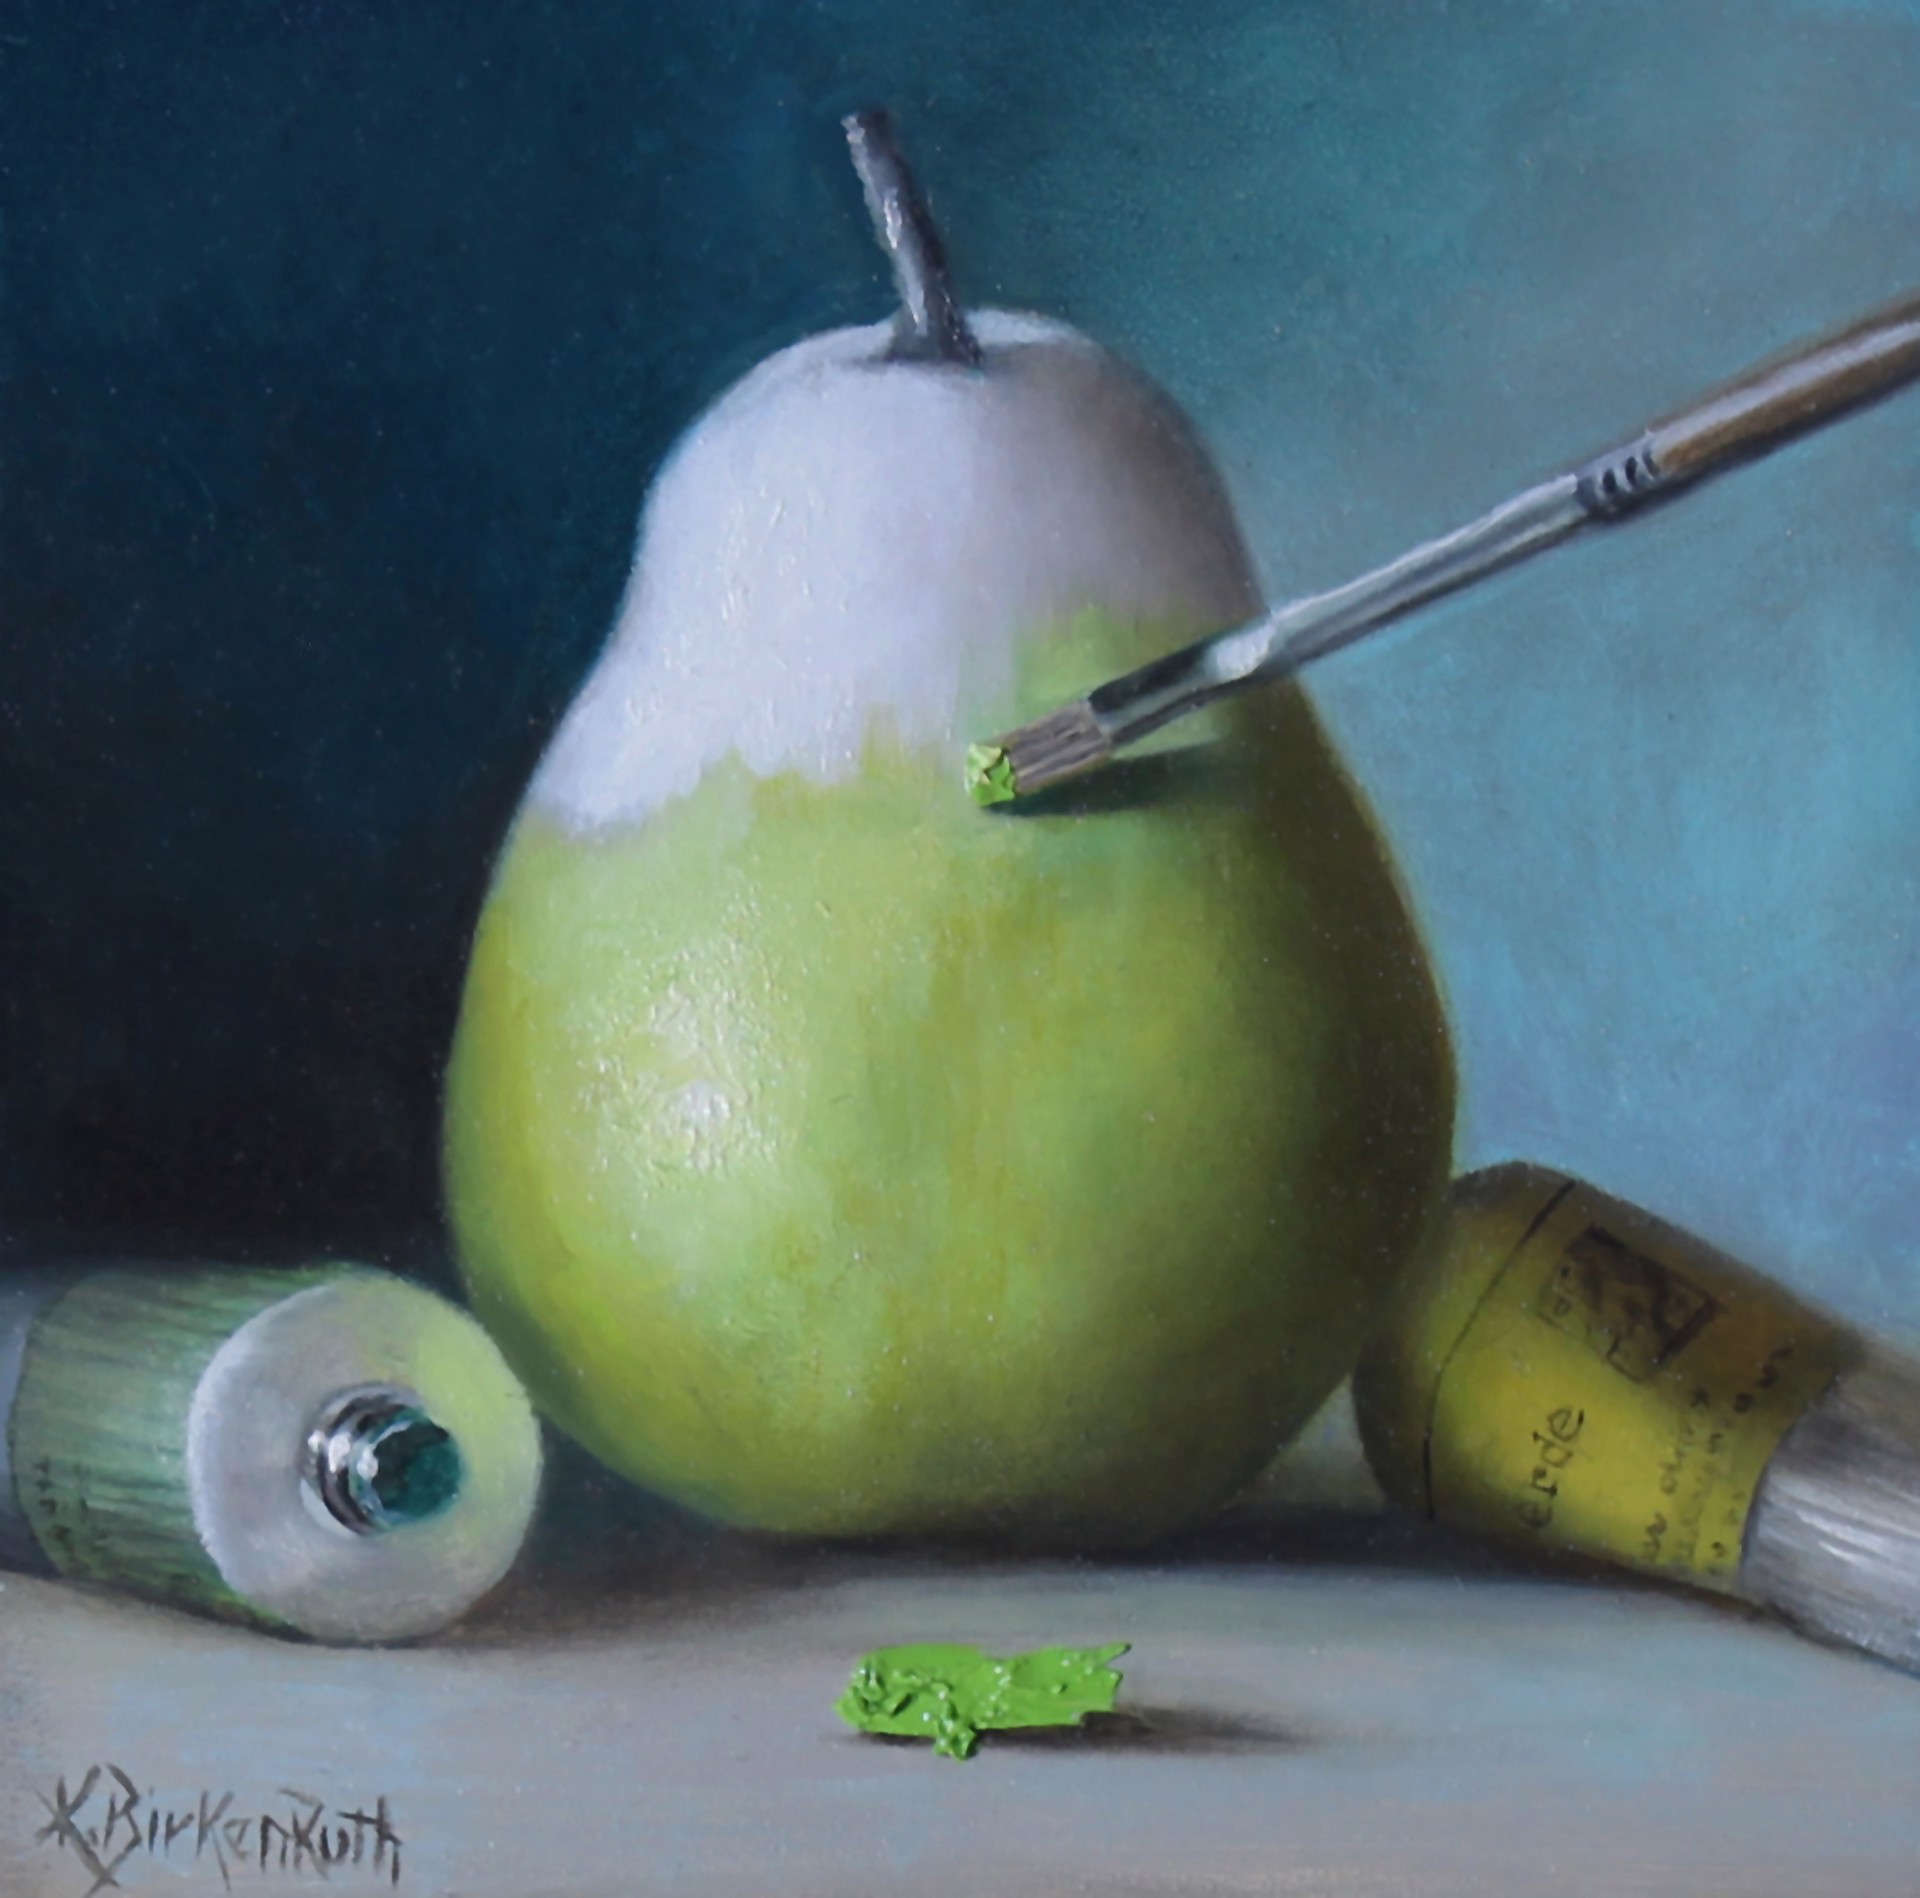 A Pear in Progress by Kelly Birkenruth